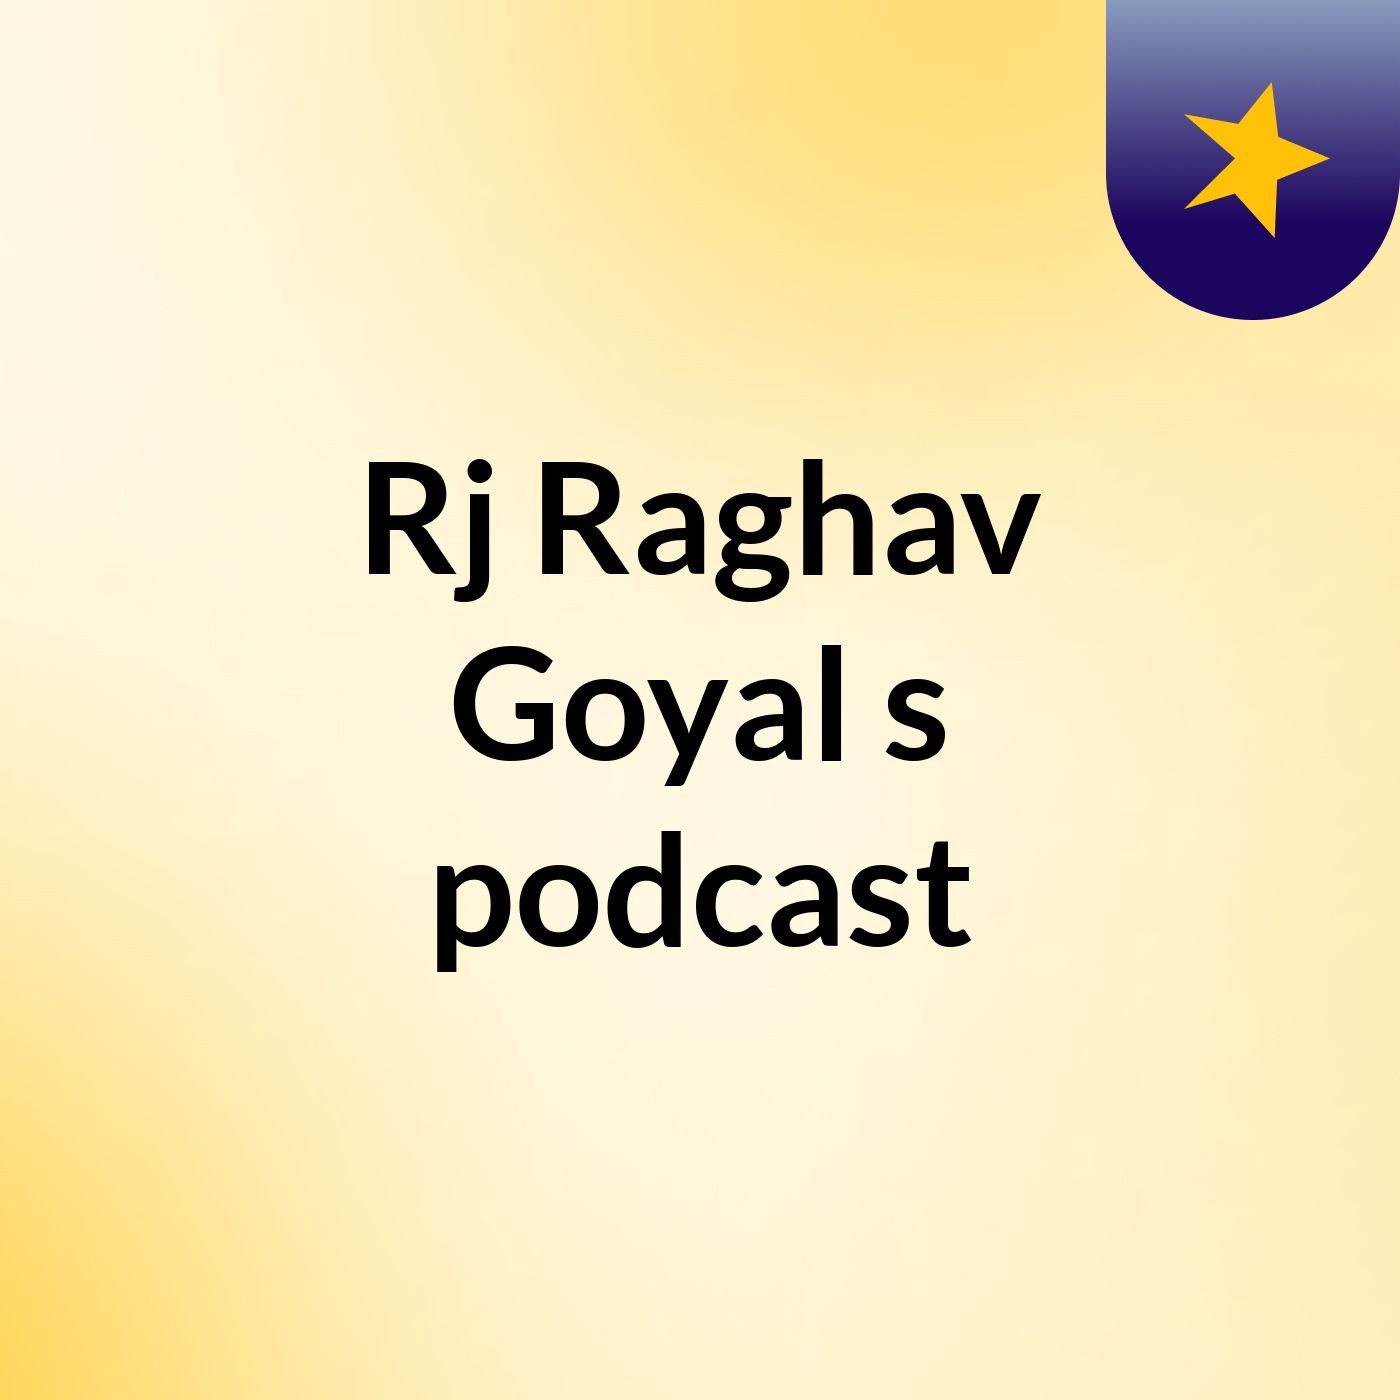 Episode 5 - Rj Raghav Goyal's podcast